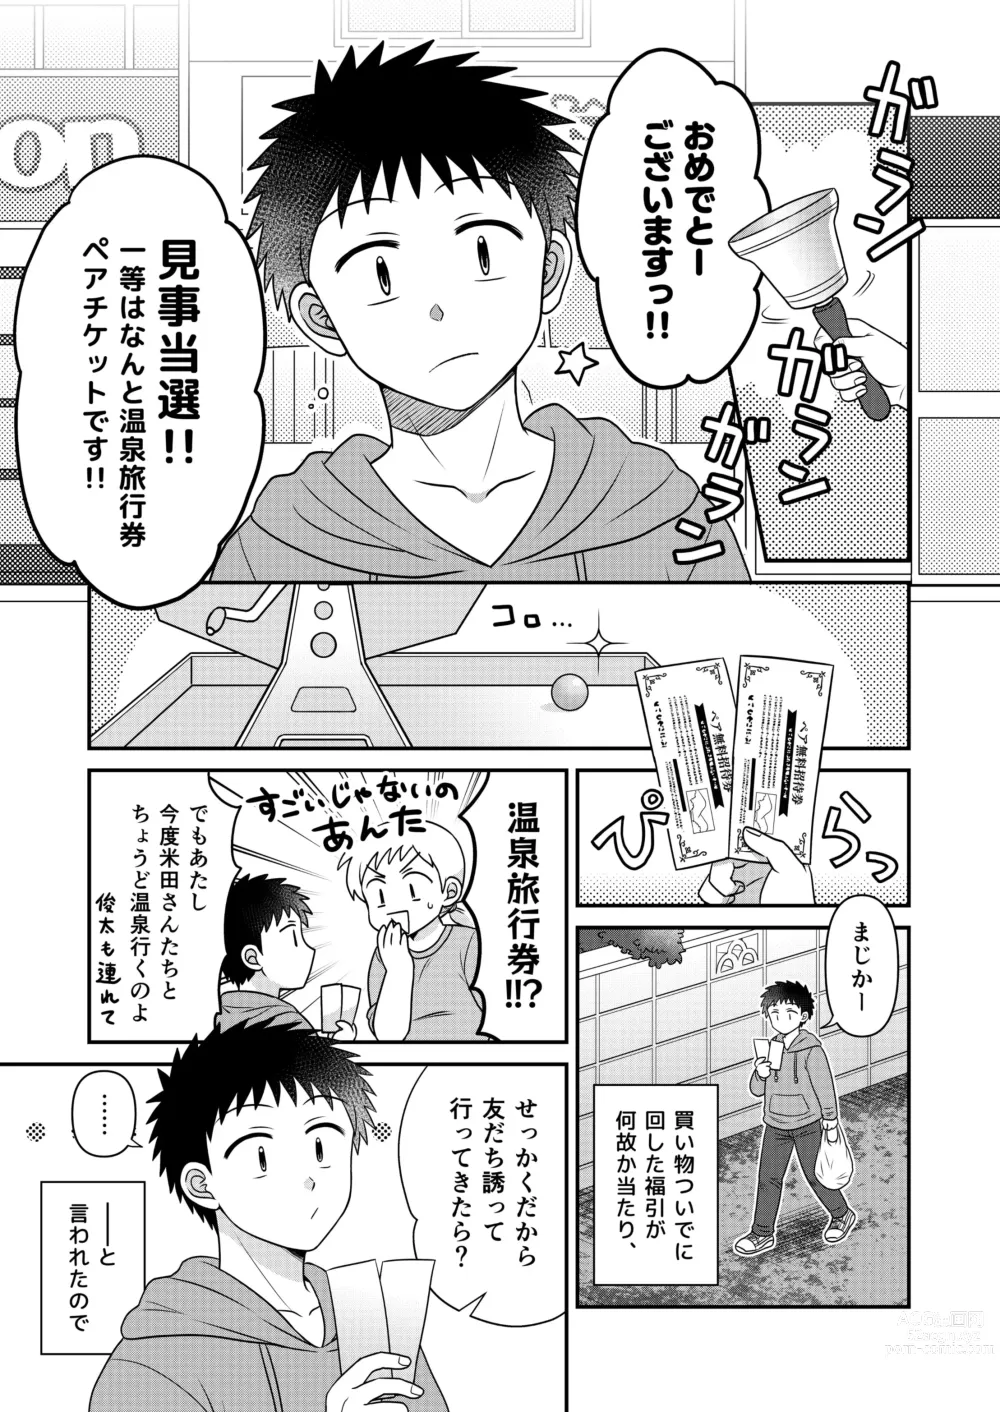 Page 5 of doujinshi Hayatochiri BL Sakura Mau Onsen Ryokou no Hanashi.